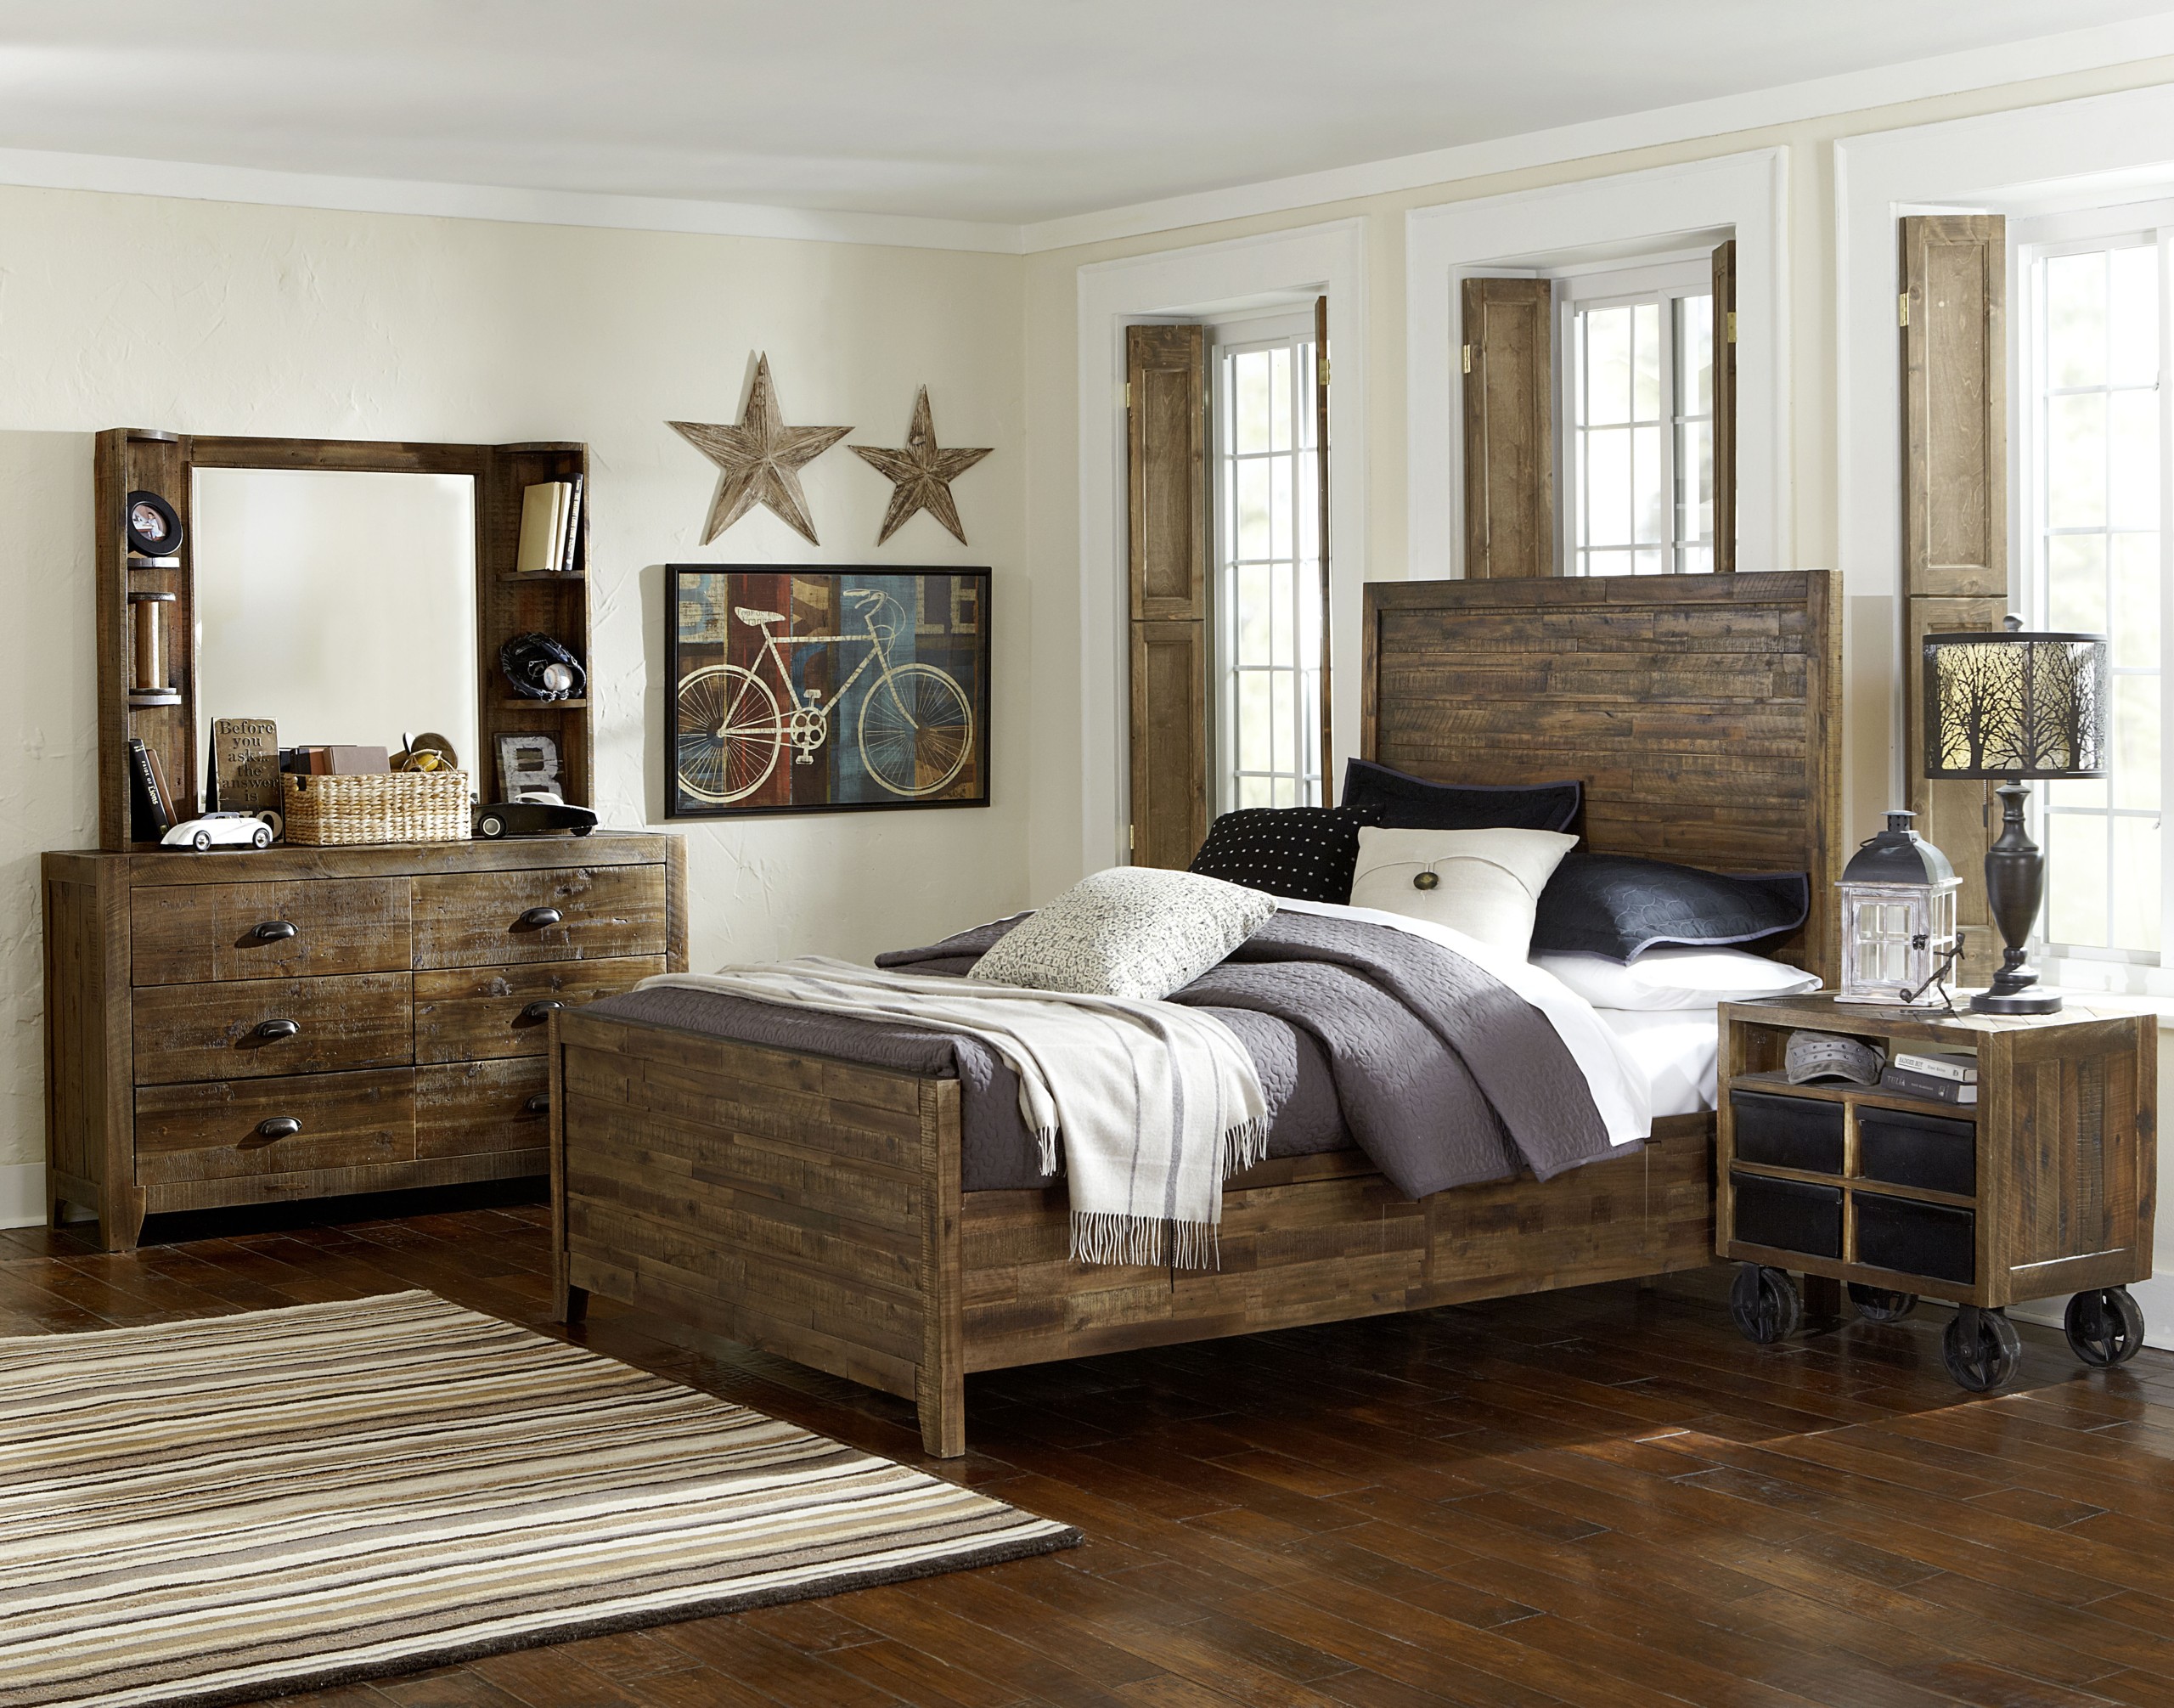 Braxton distressed natural wood glass 2pc bedroom set w